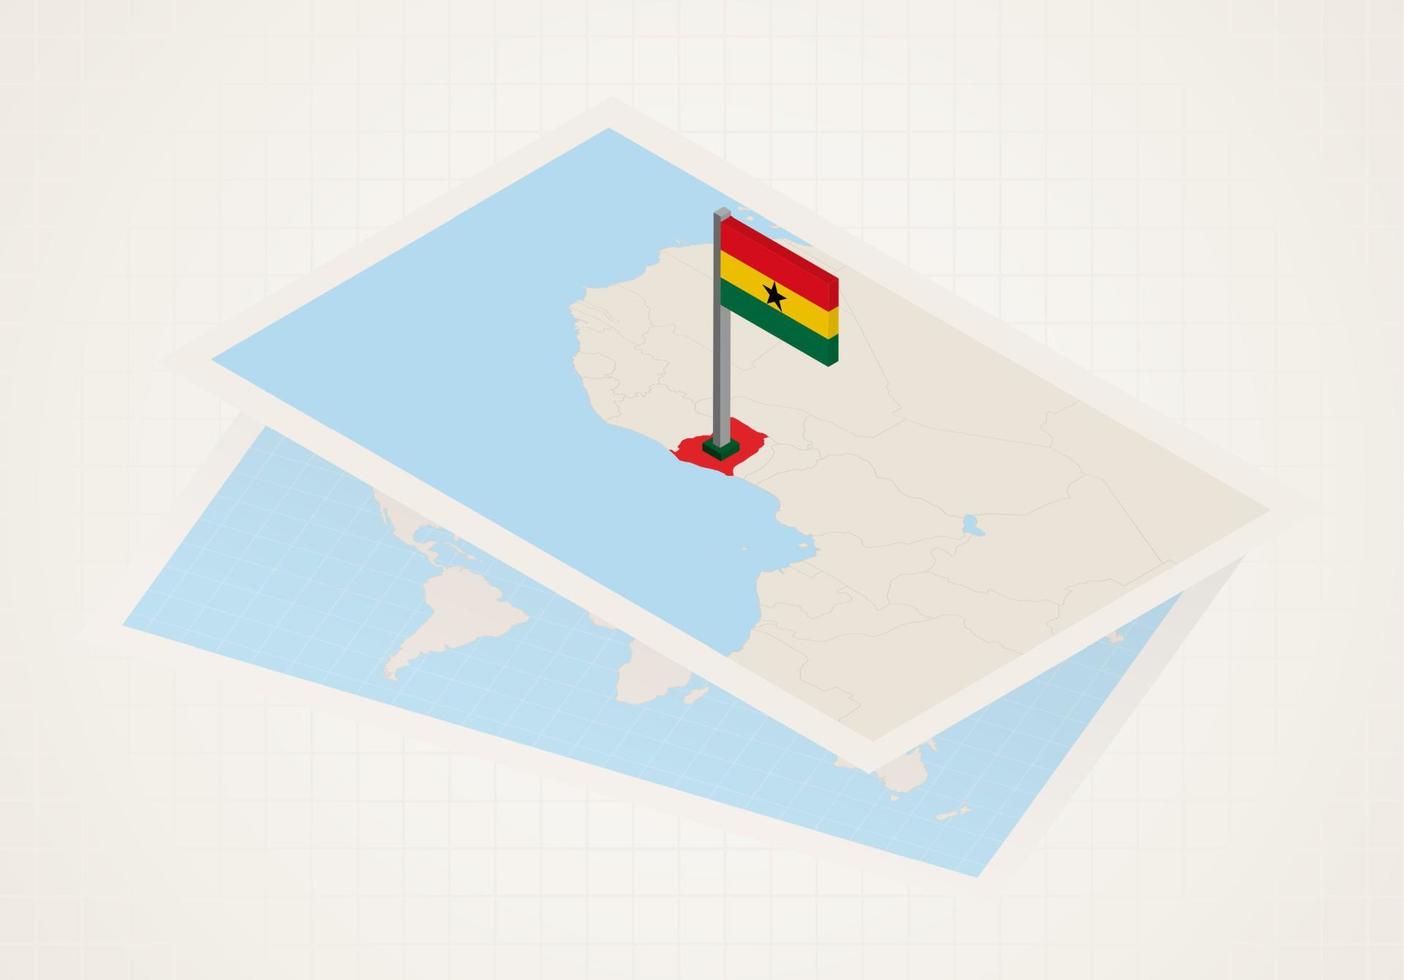 ghana seleccionado en el mapa con bandera 3d de ghana. vector